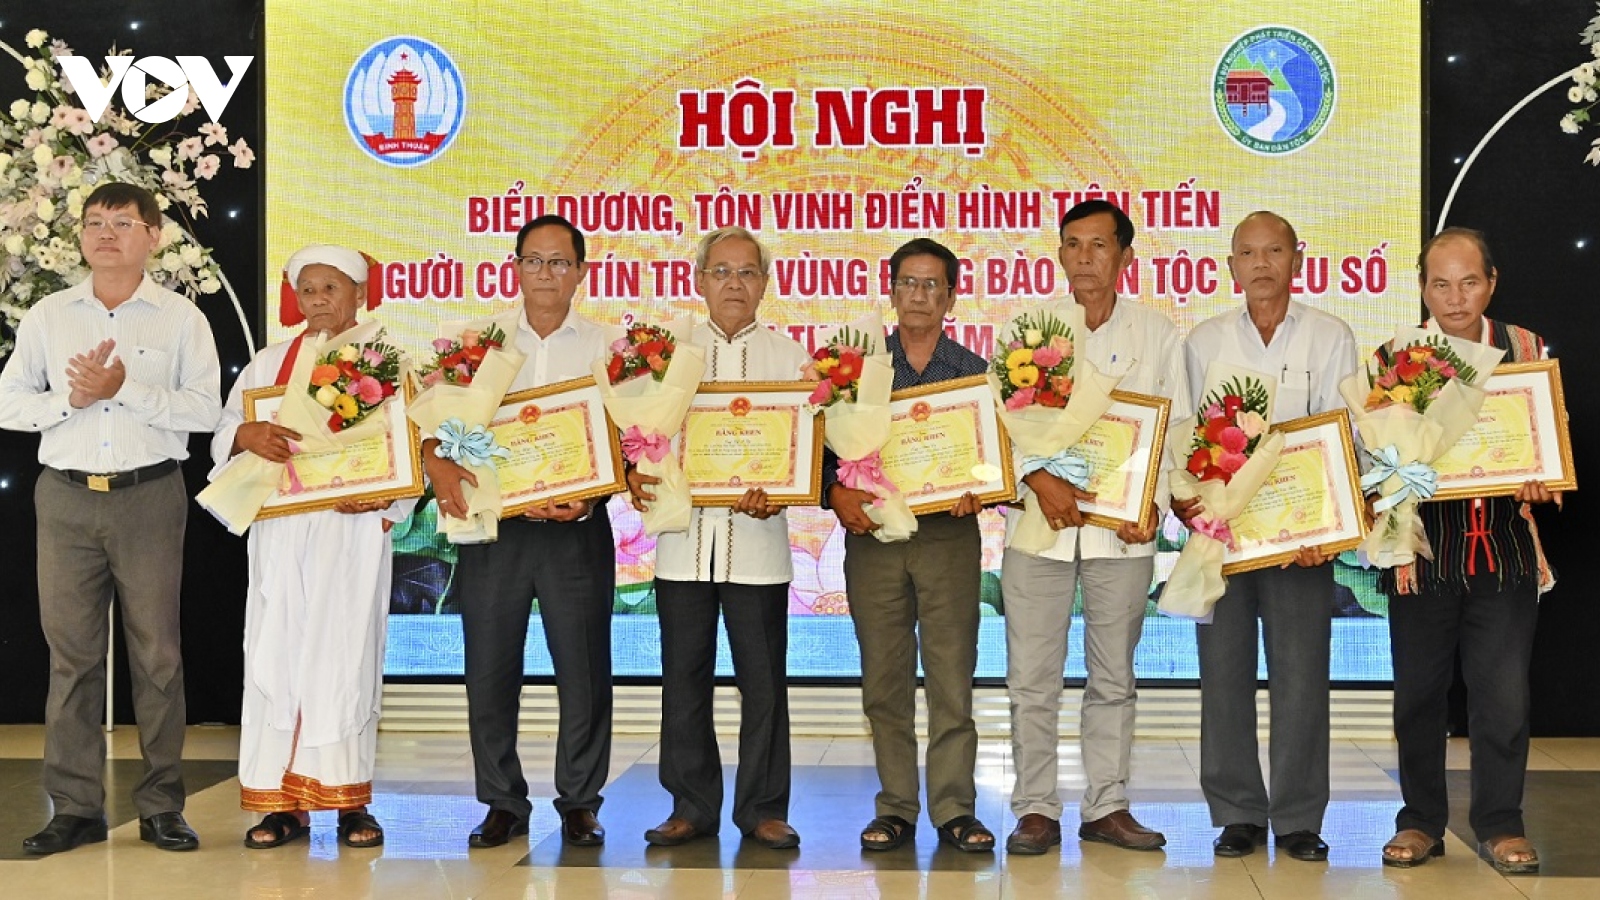 “Thủ lĩnh" làng Chăm ở Bình Thuận